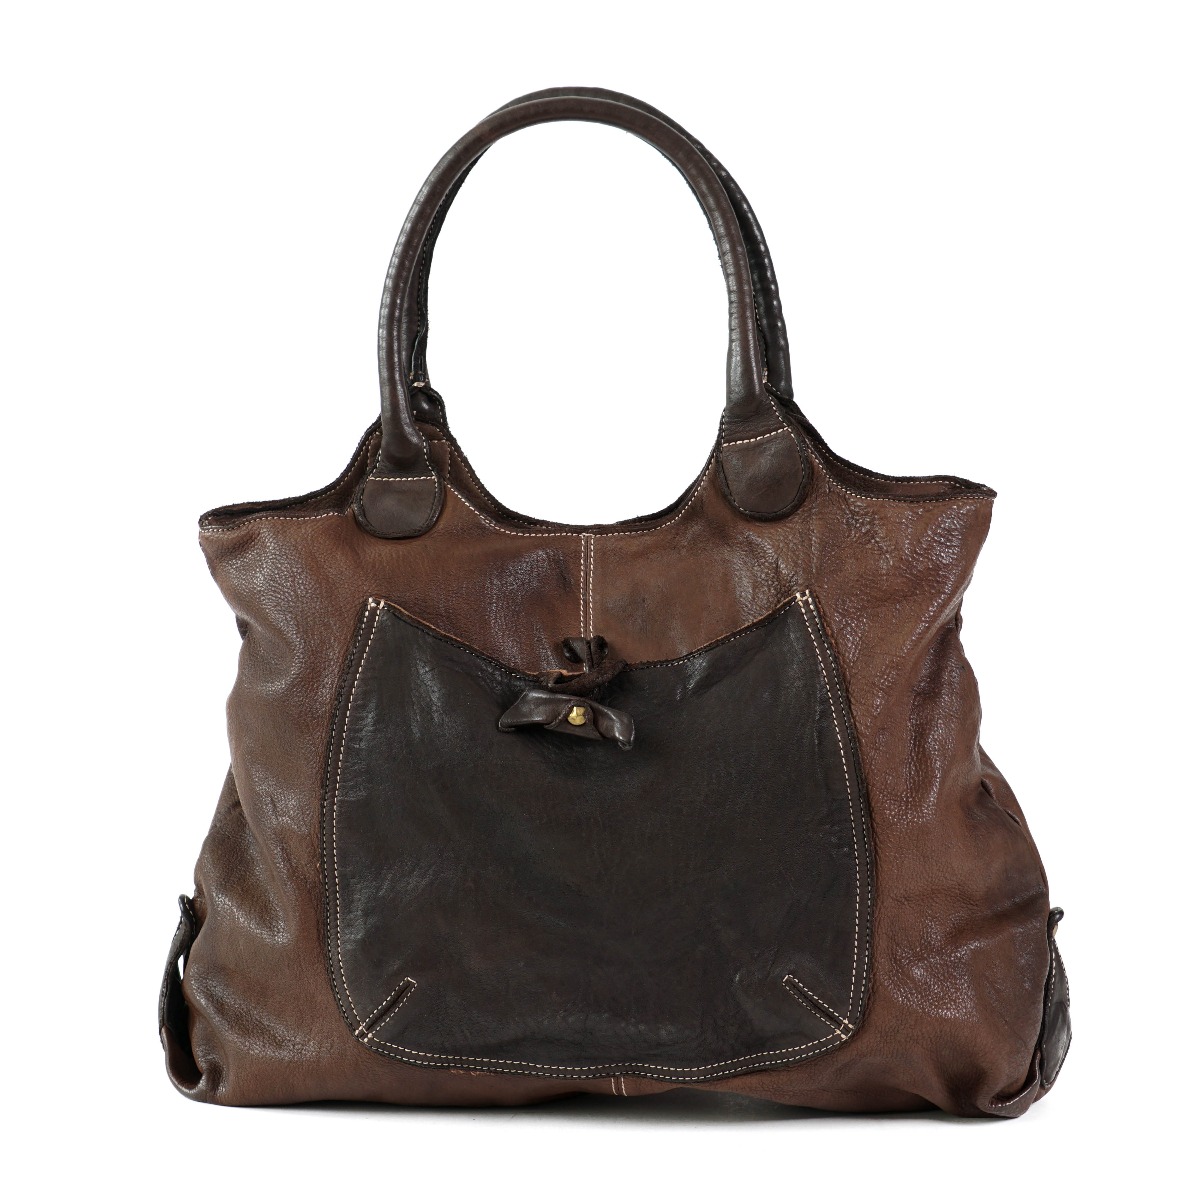 Dark brown shoulder bag with pocket